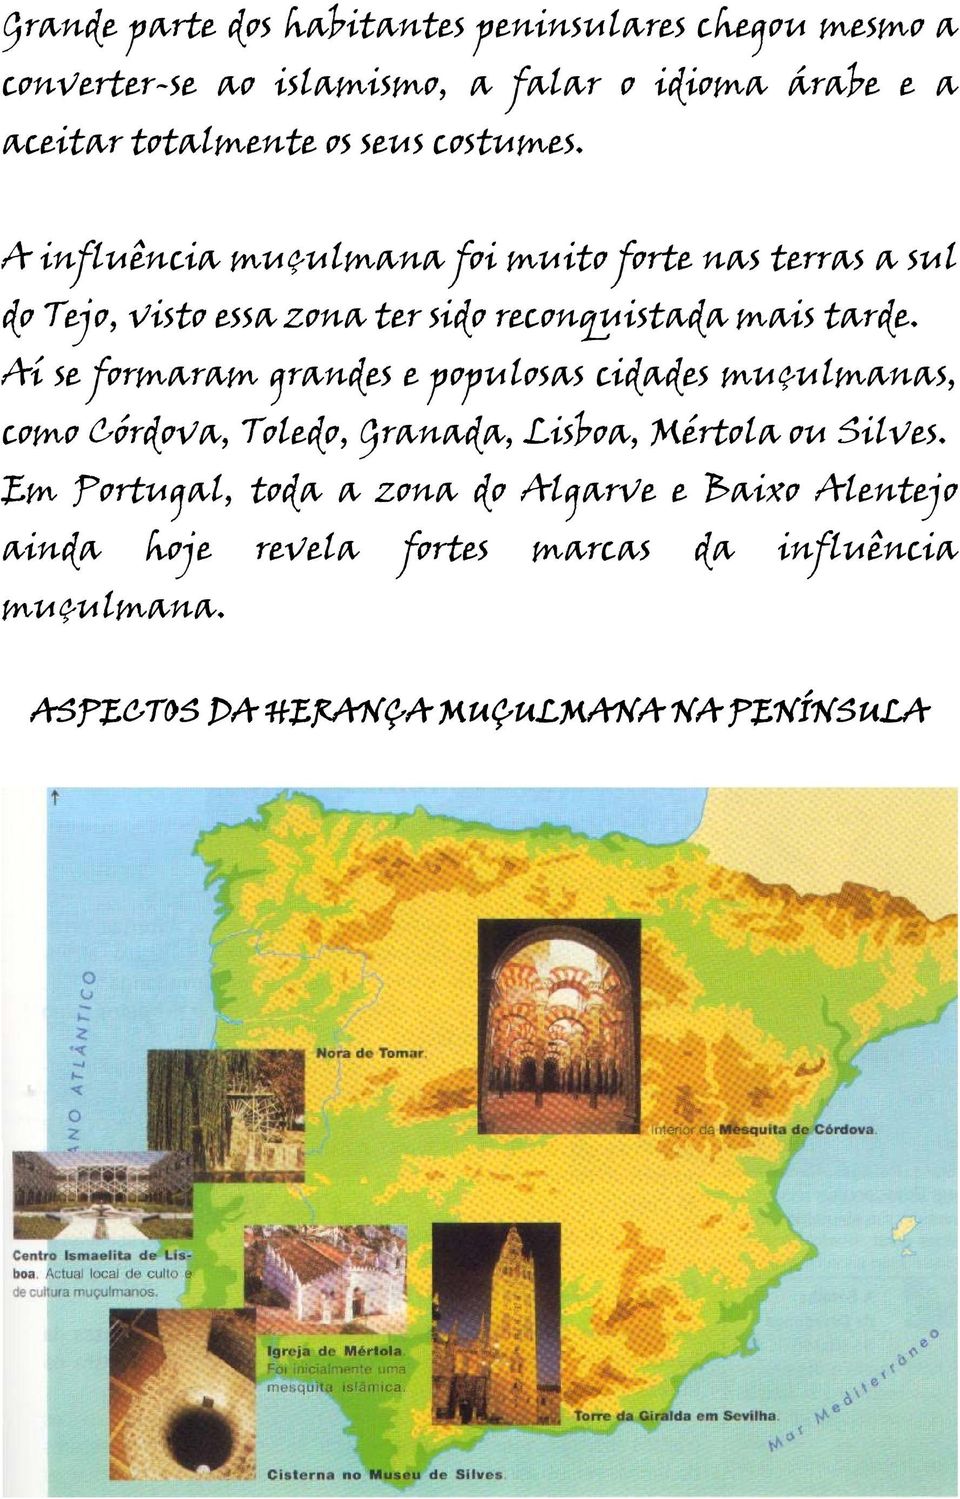 Aí se formaram grandes e populosas cidades muçulmanas, como Córdova, Toledo, Granada, Lisboa, Mértola ou Silves.